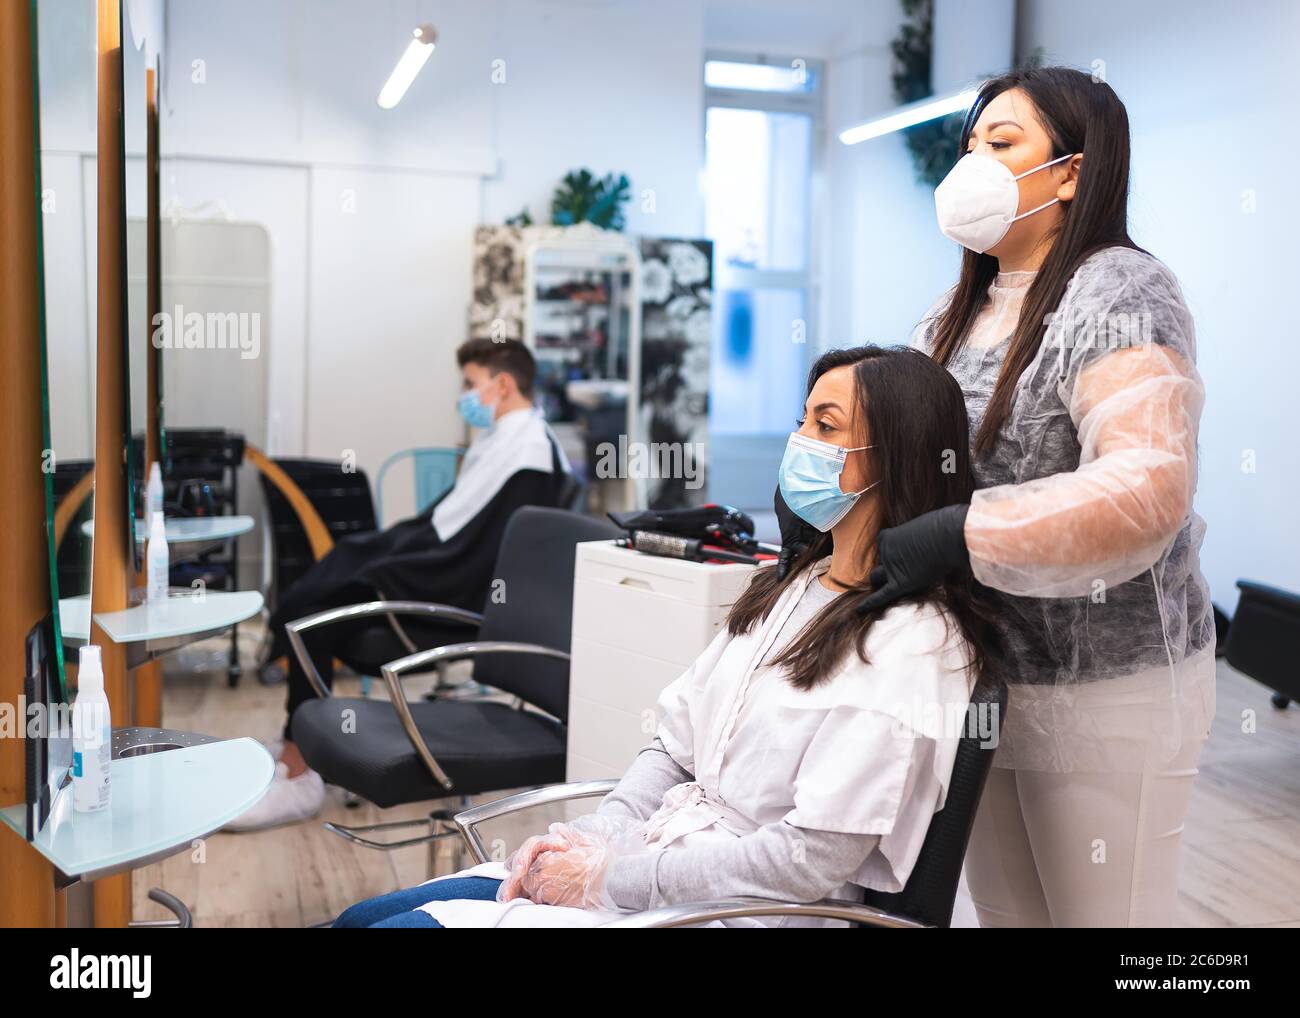 Friseur mit einer Schutzmaske und Handschuhen, die das Haar eines maskierten Kunden messen, der auf einem Stuhl vor einem Spiegel in einem Friseursalon sitzt Stockfoto